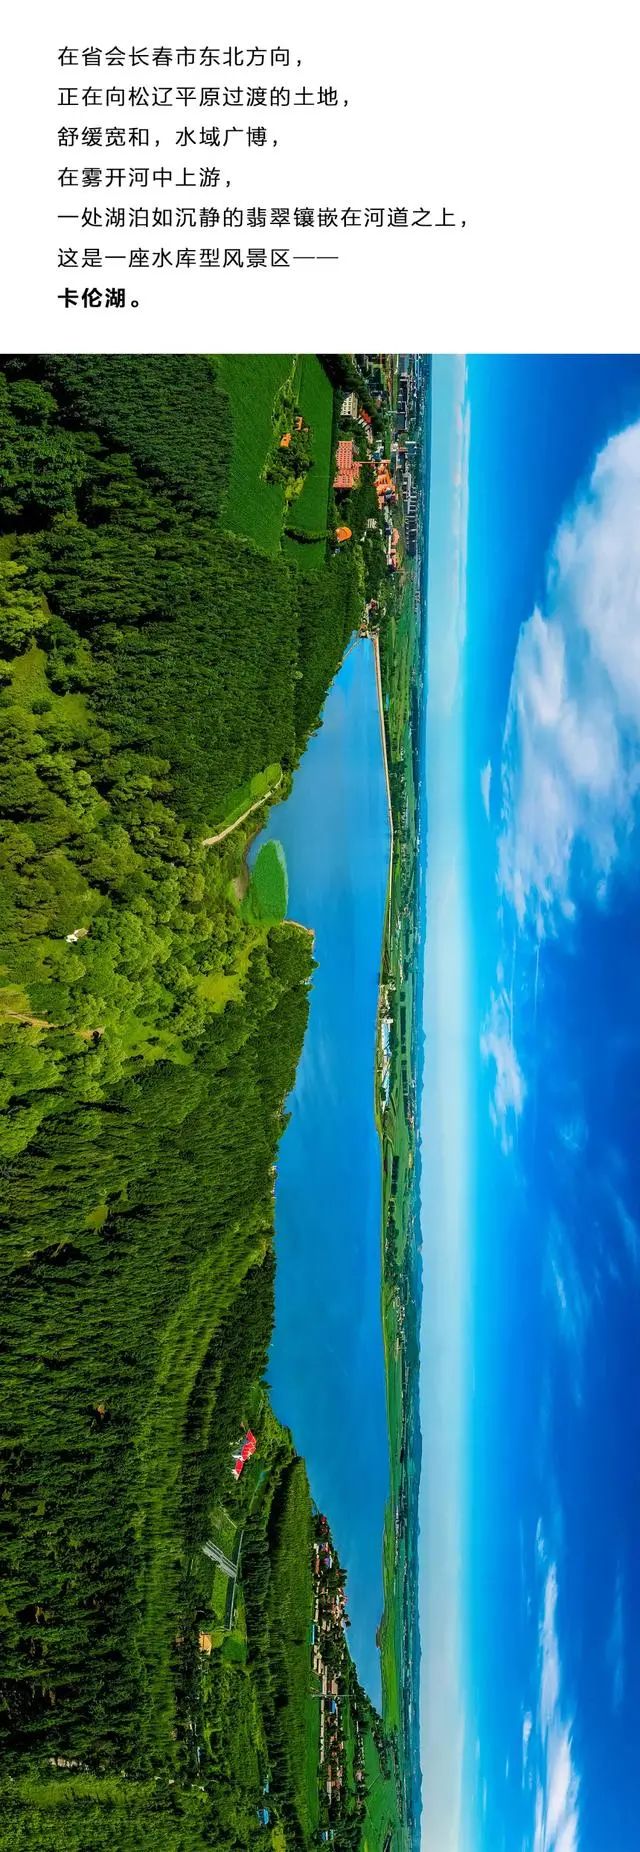 九台卡伦湖今日登上中国国家地理它被称为长春的瓦尔登湖